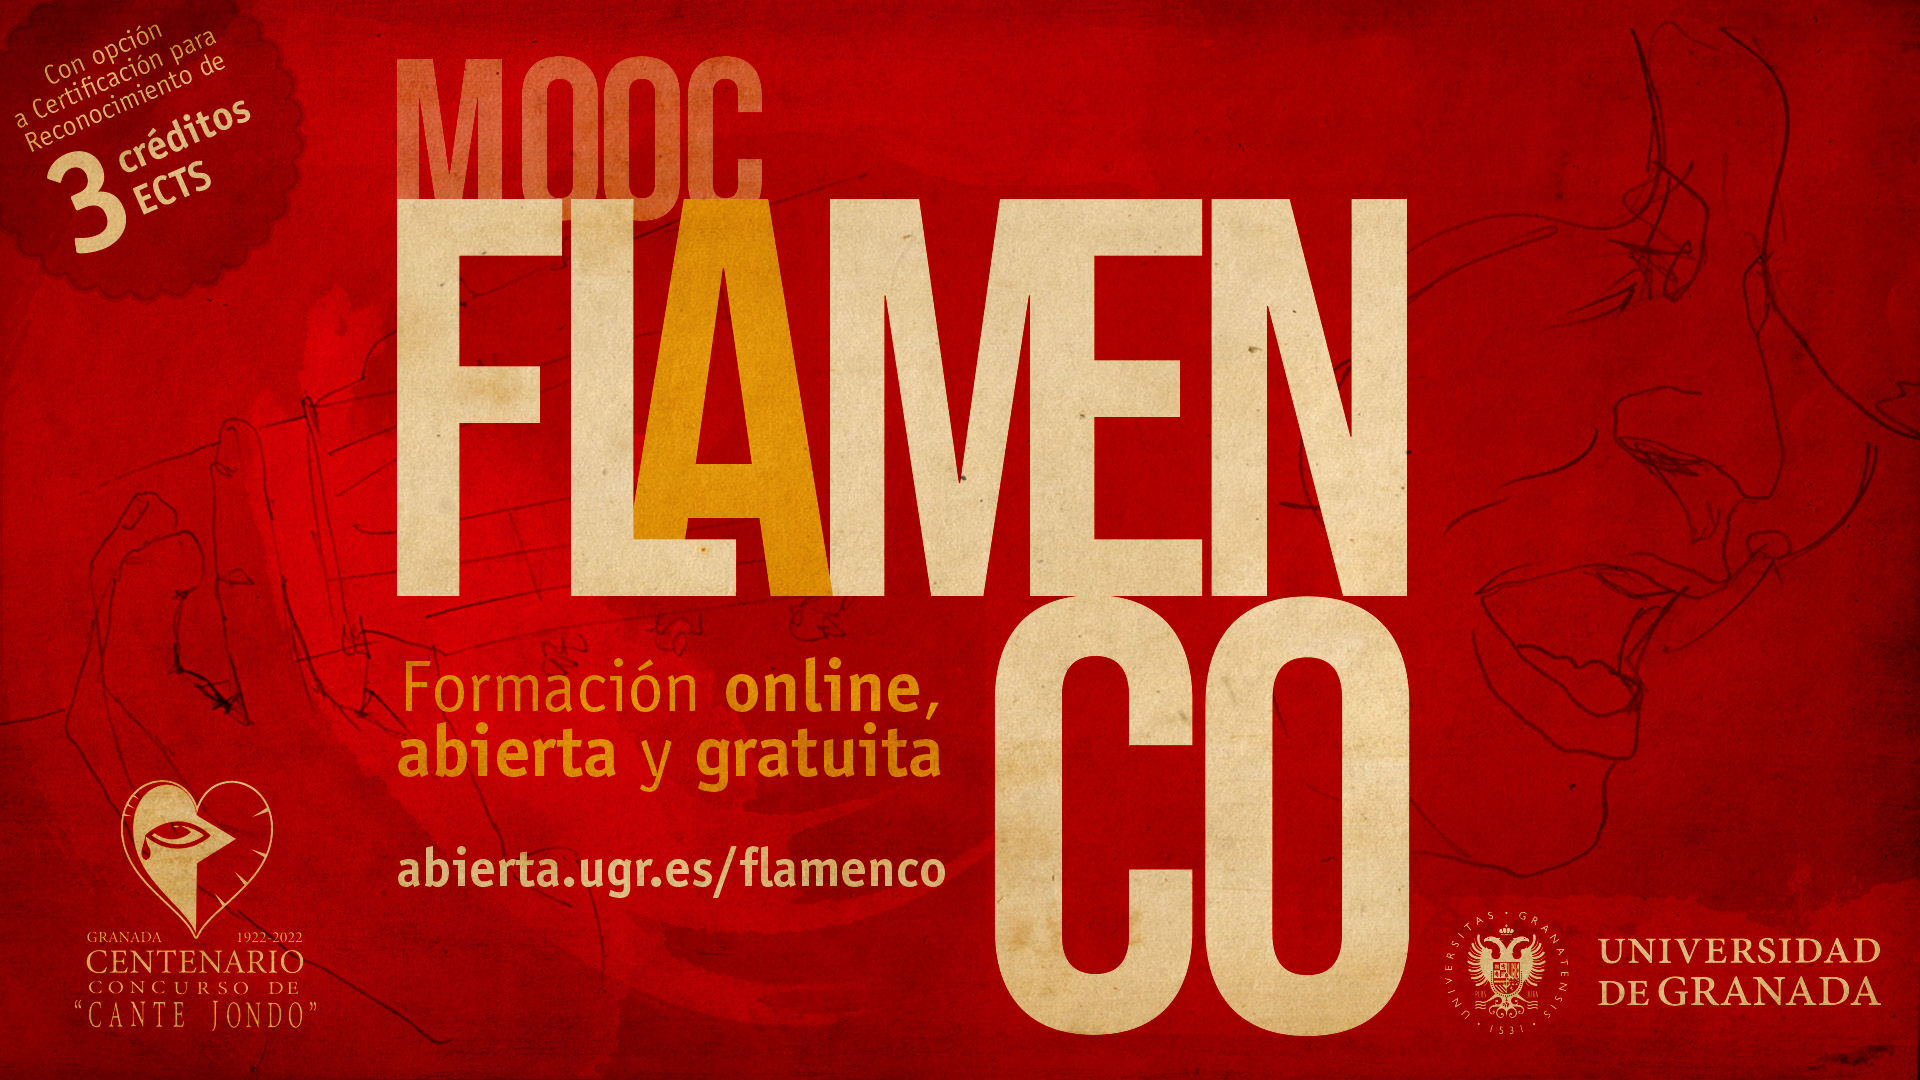 creatividad 2ª edición del MOOC “Flamenco”